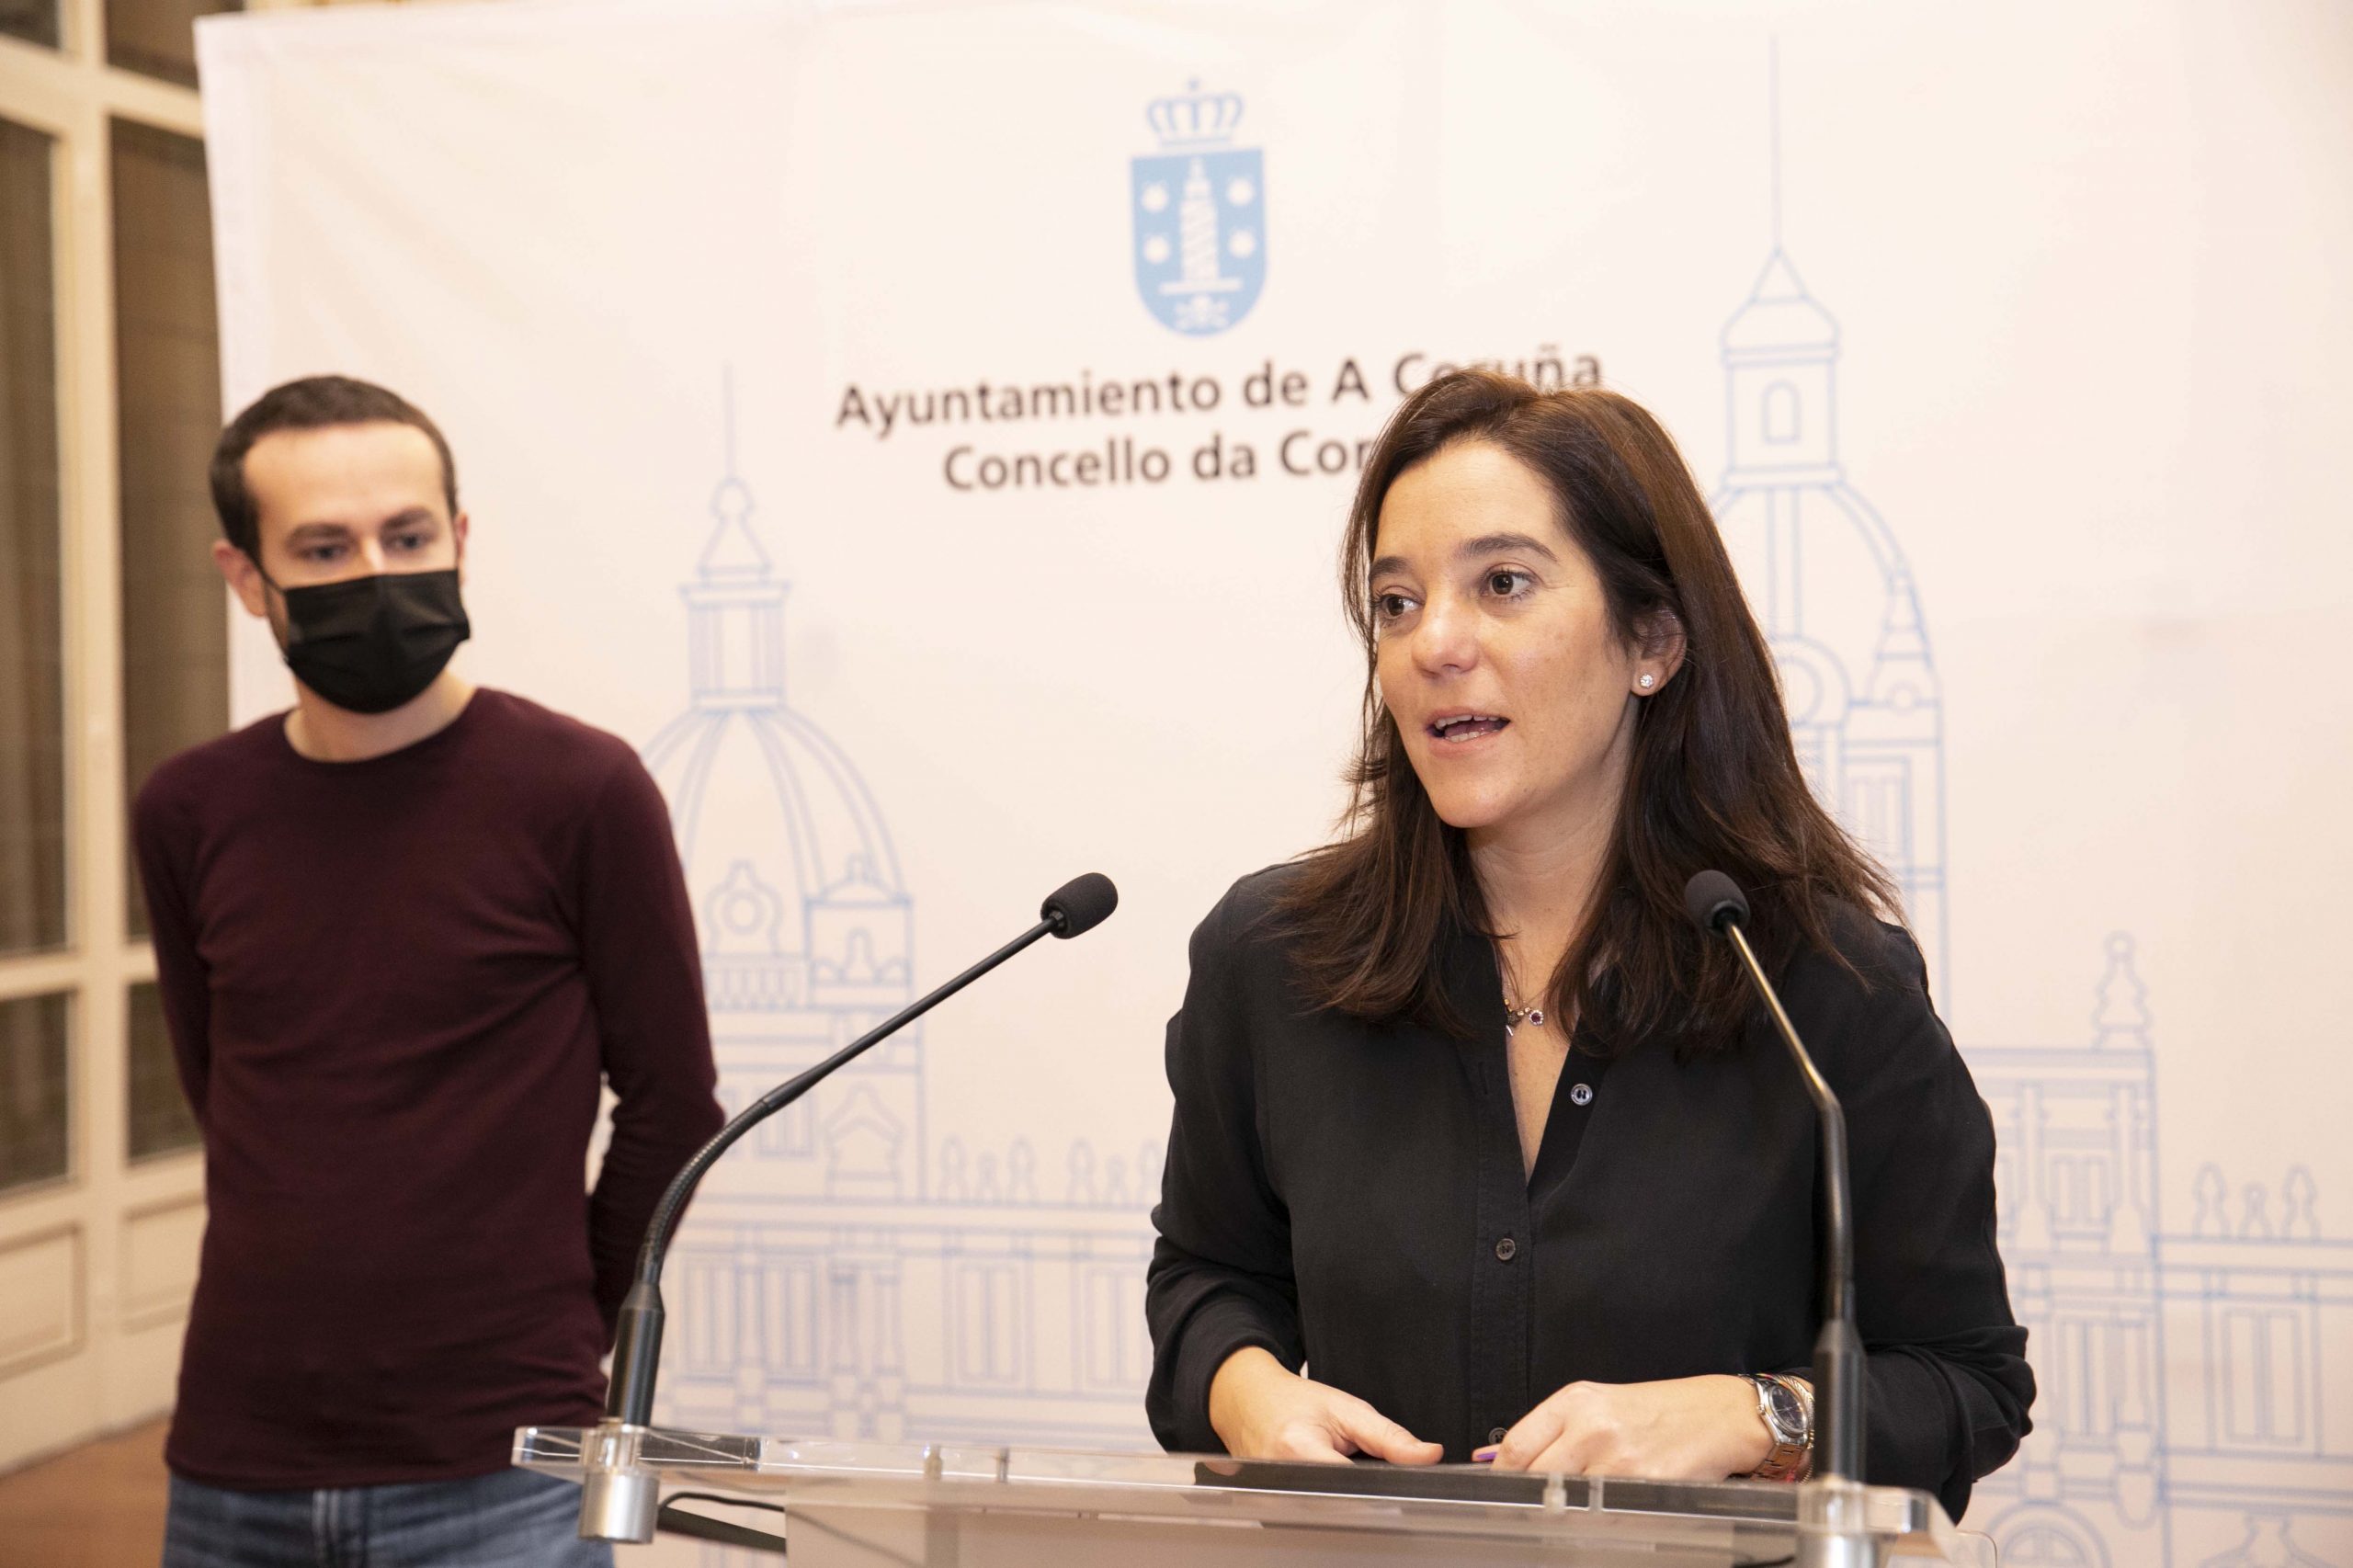 A Academia e o Concello da Coruña presentan as actividades que convertirán á cidade no “epicentro do audiovisual galego” en 2022